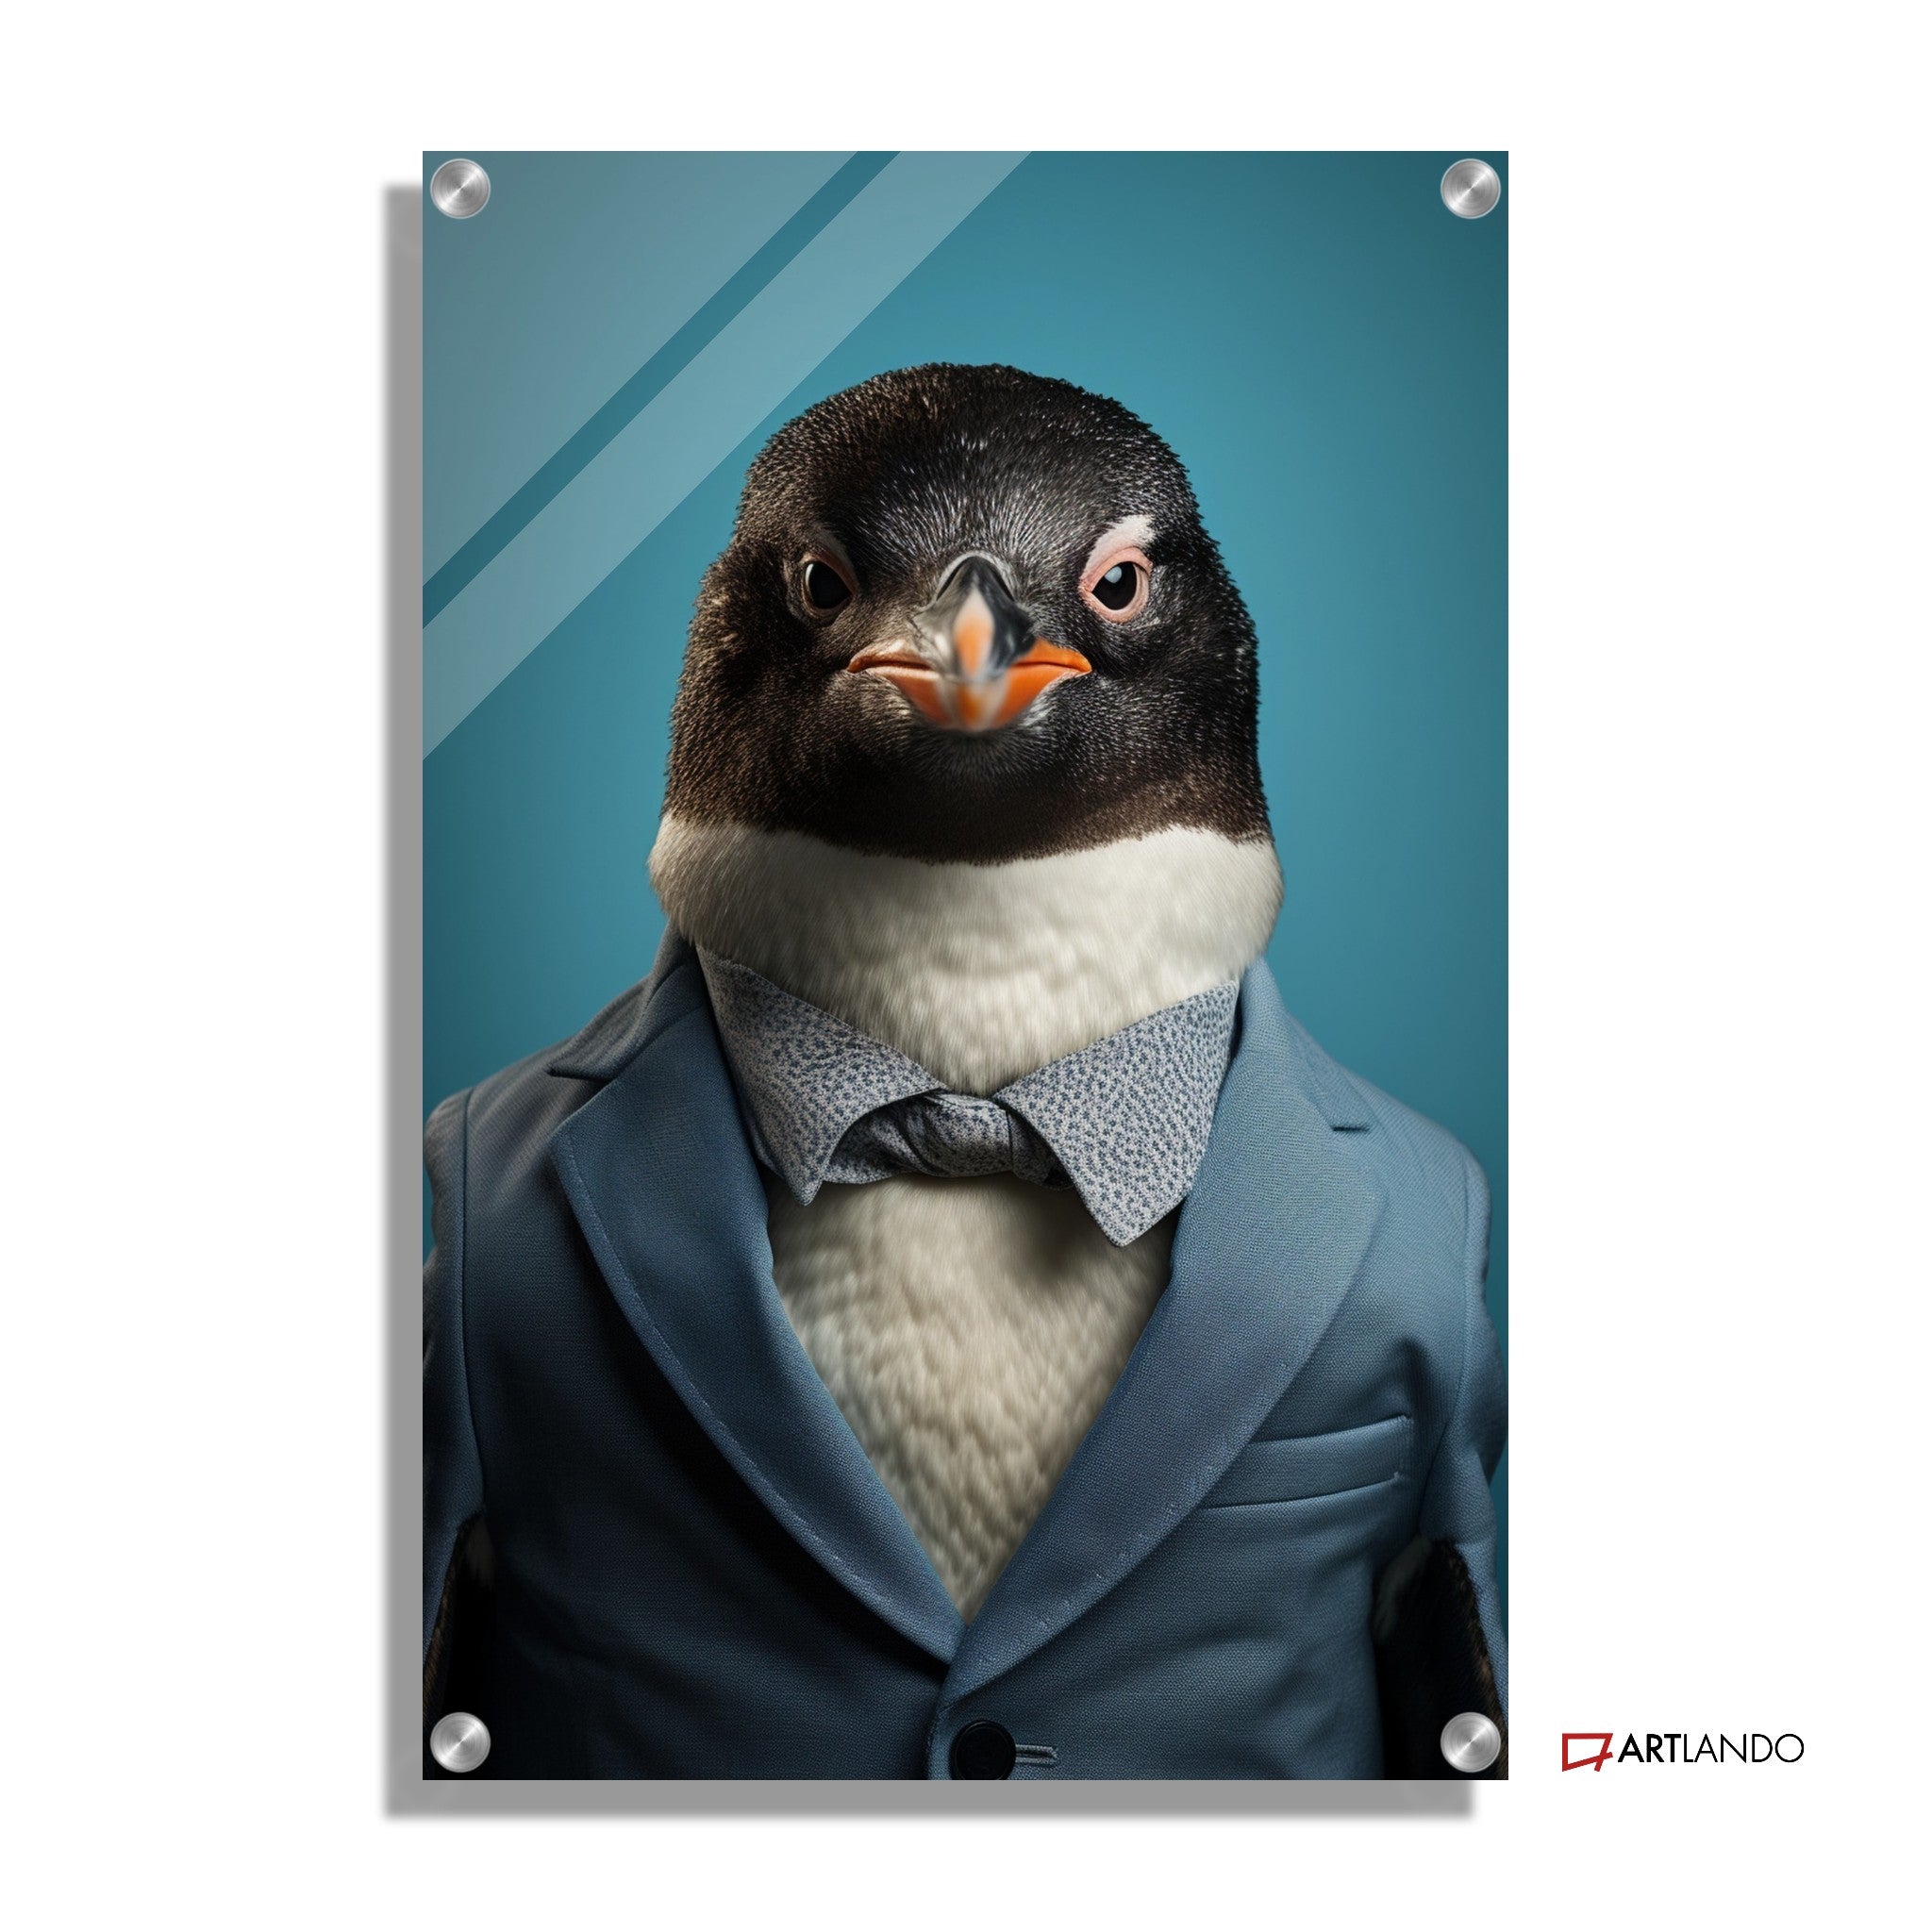 Pinguin als Geschäftsmann in blauem Anzug